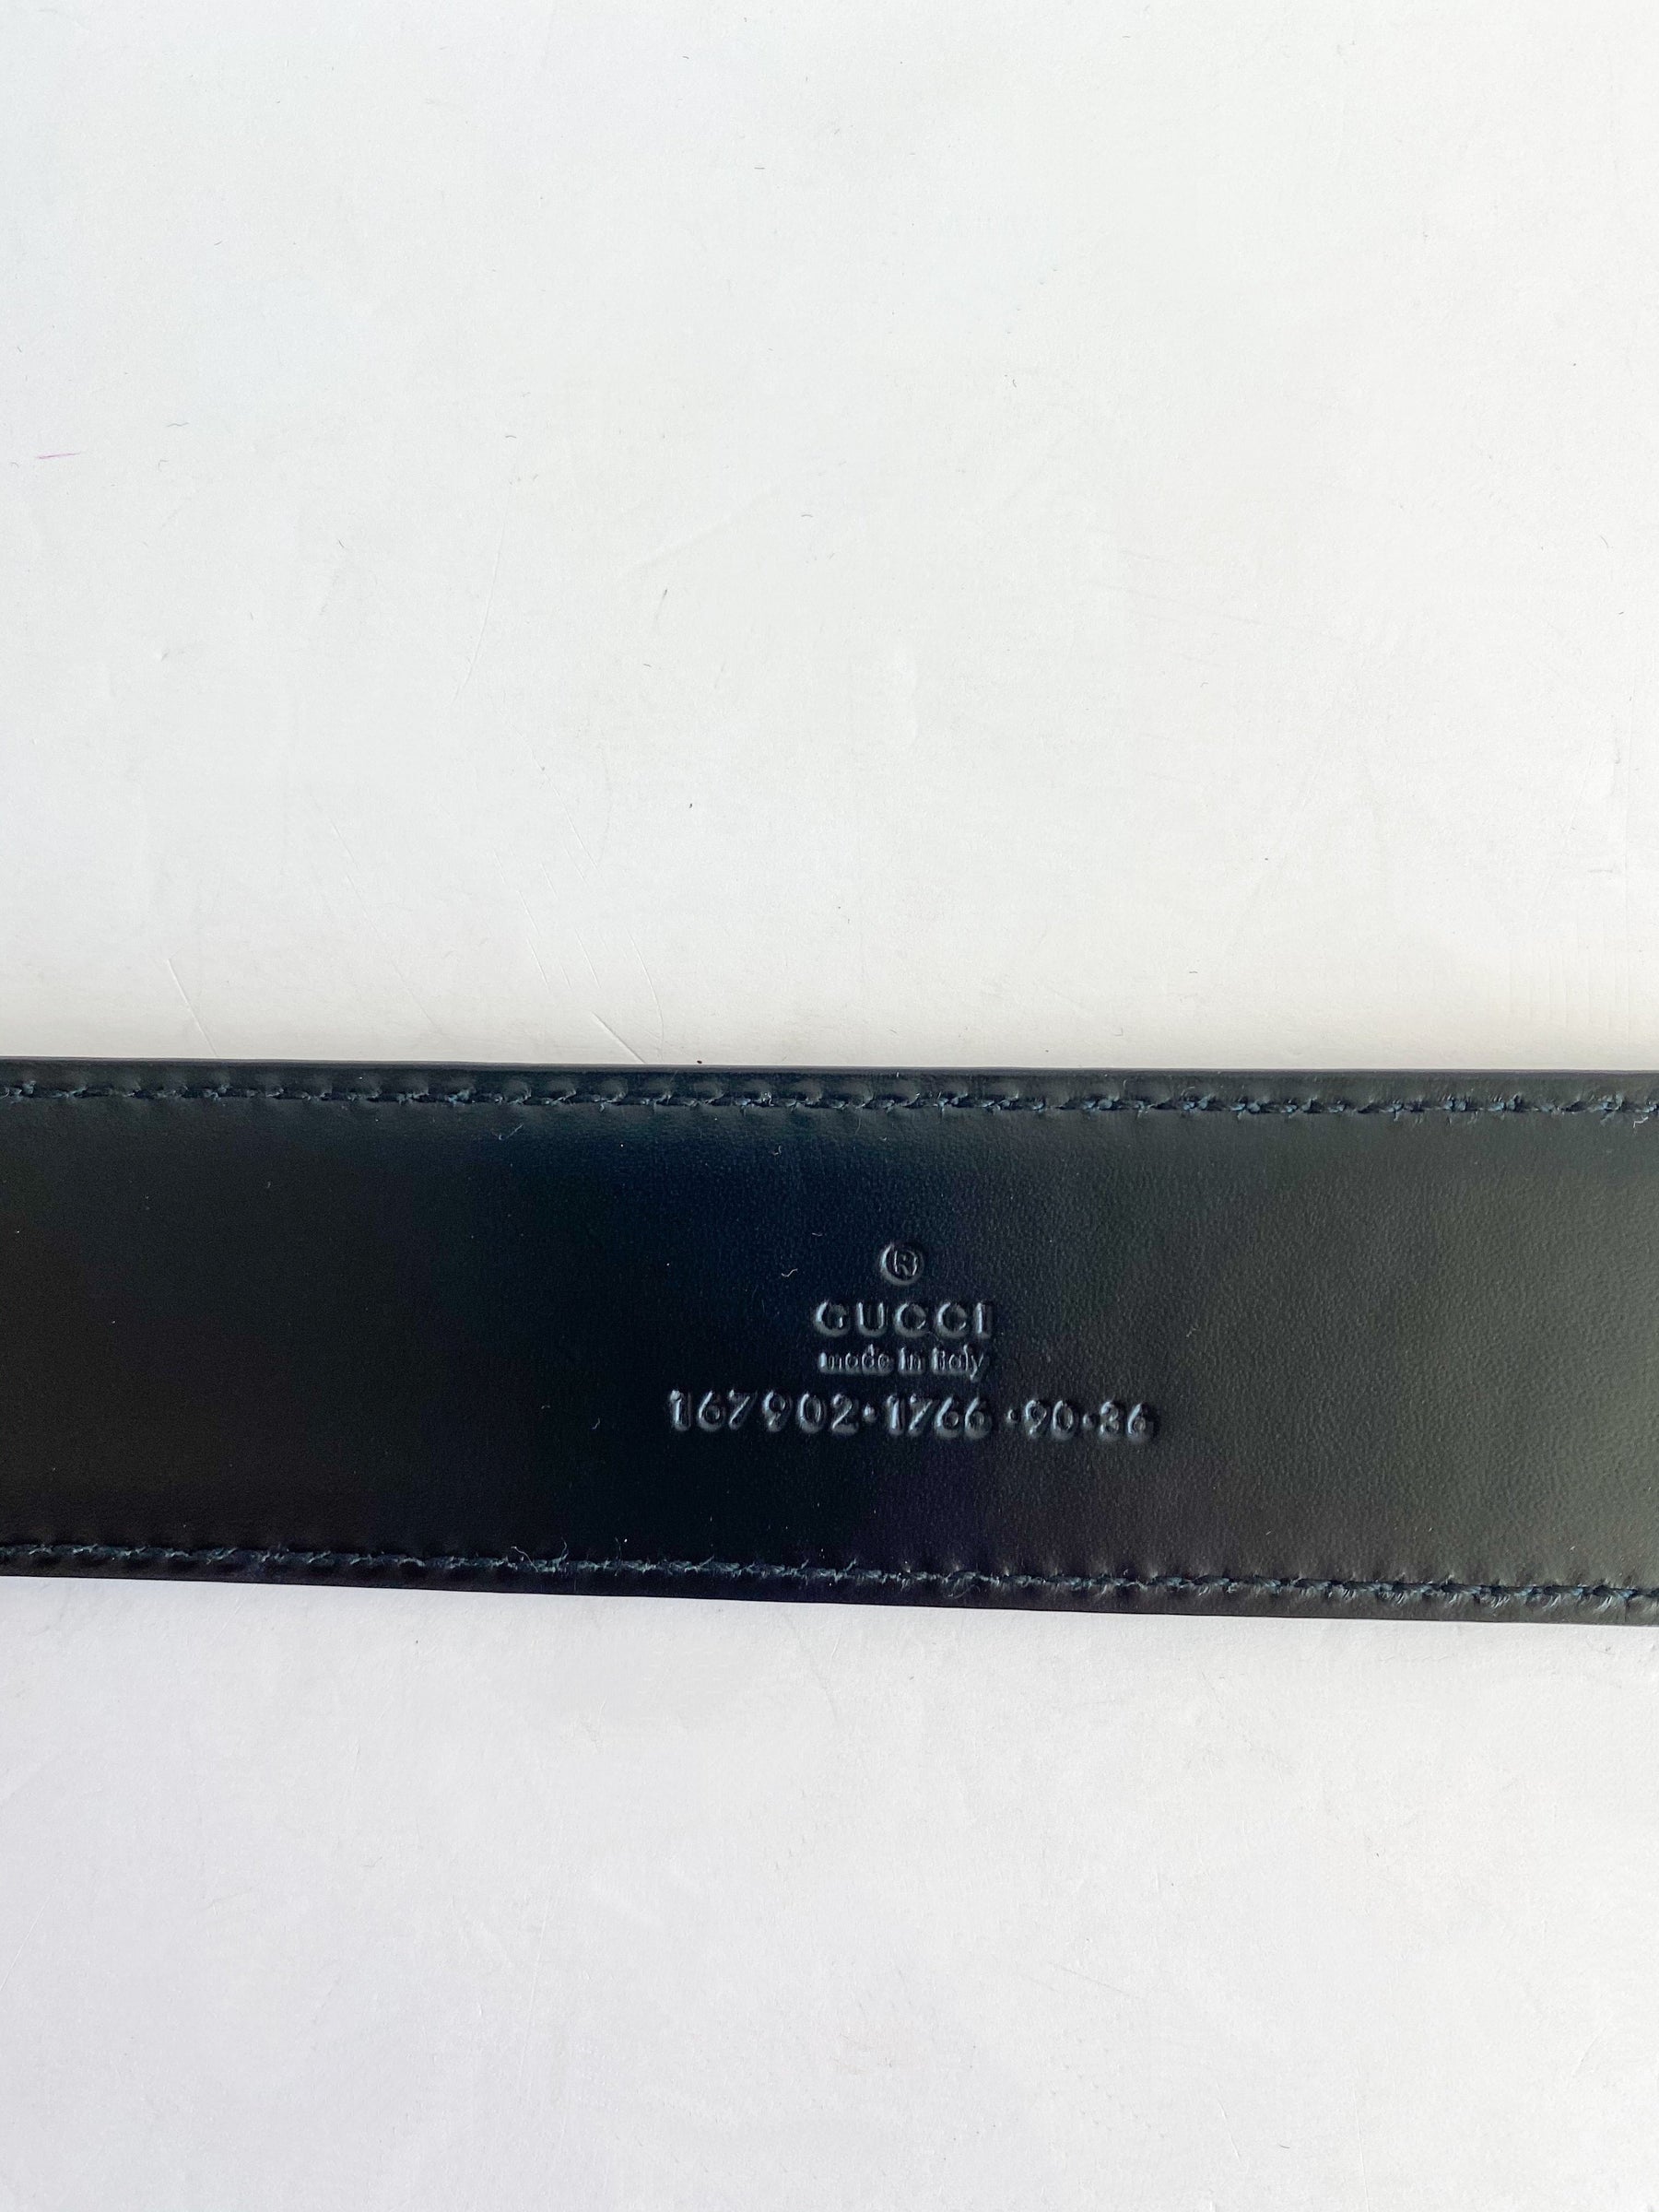 Gucci Black Leather Belt Gold Buckle Inside Logo